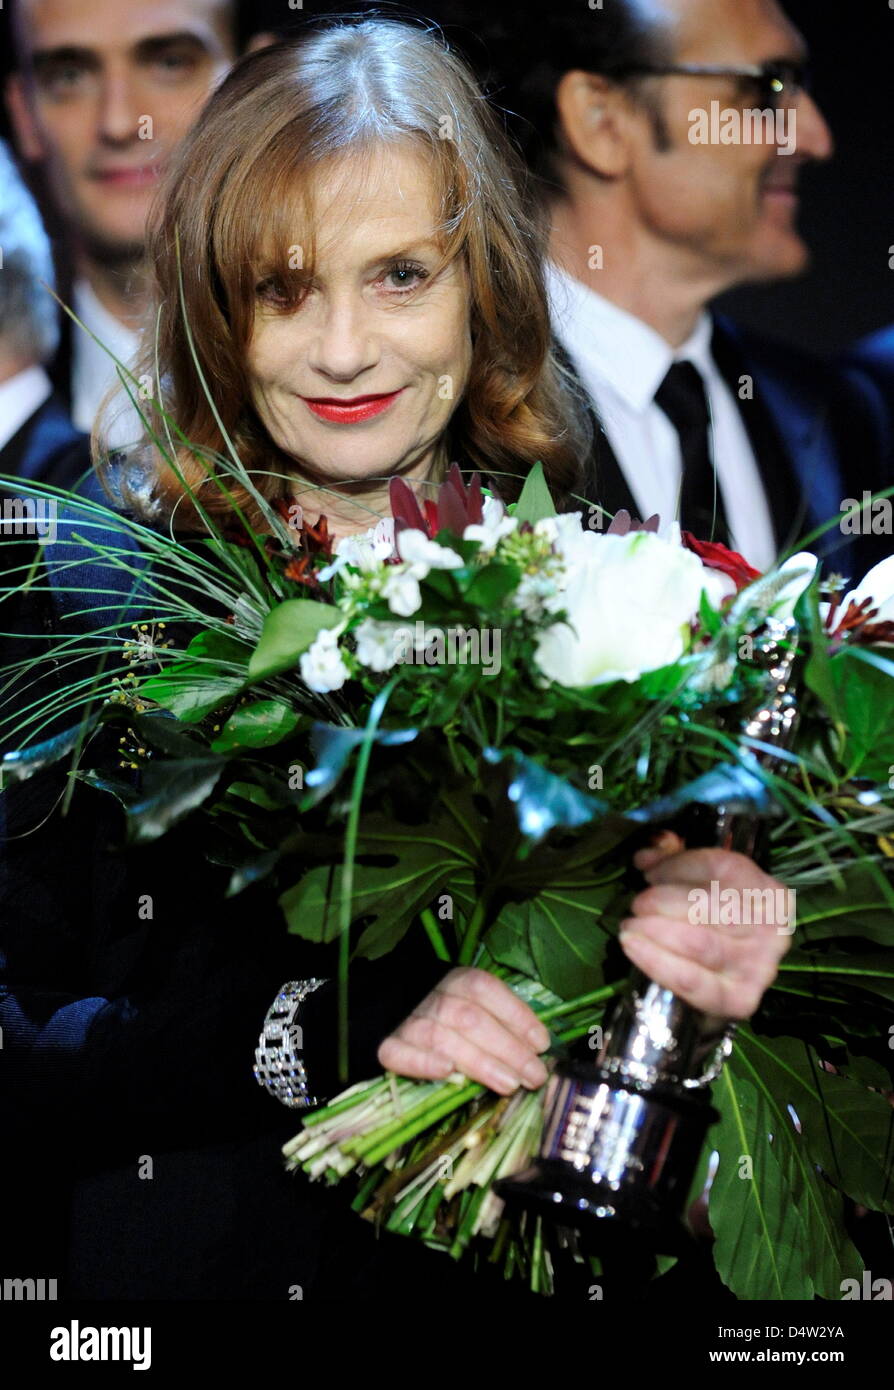 Die französische Schauspielerin Isabelle Huppert posiert am Samstag (12.12.2009) in der Jahrhunderthalle in Bochum nach der Verleihung des Europäischen Filmpreises mit ihrem Preis in der Kategorie 'Europäischer Beitrag zum Weltkino 2009'. Der Europäische Filmpreis wird jährlich in 16 Kategorien vergeben und häufig auch als europäischer Oscar bezeichnet. Foto: Clemens Bilan dpa/lnw Stock Photo